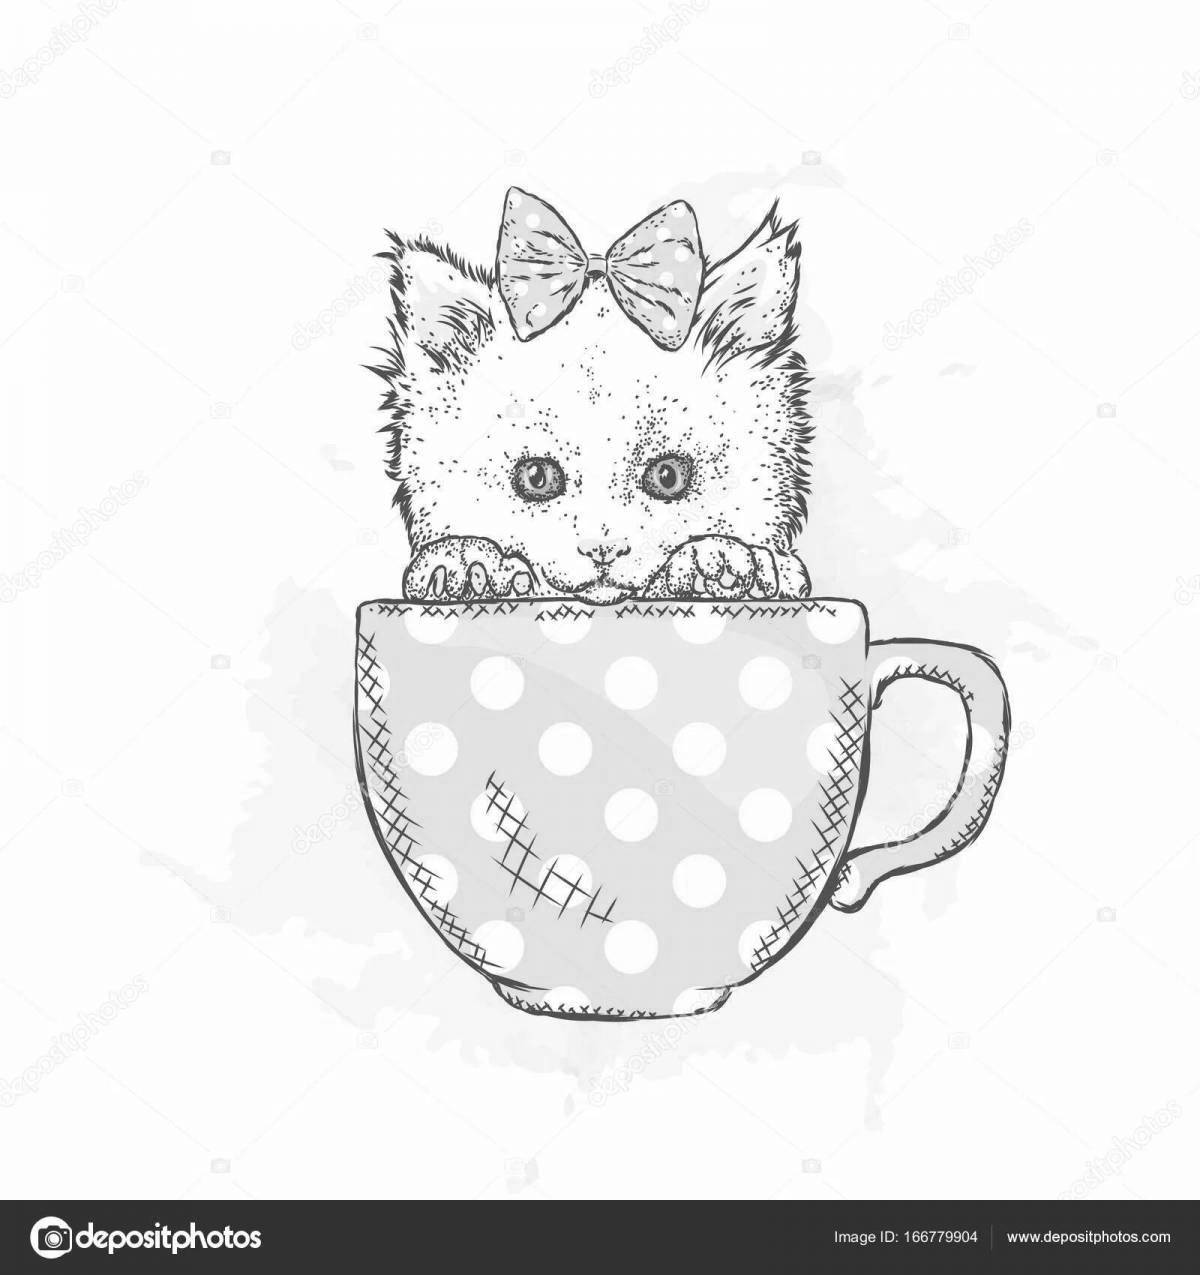 Cute cat in a cup coloring book